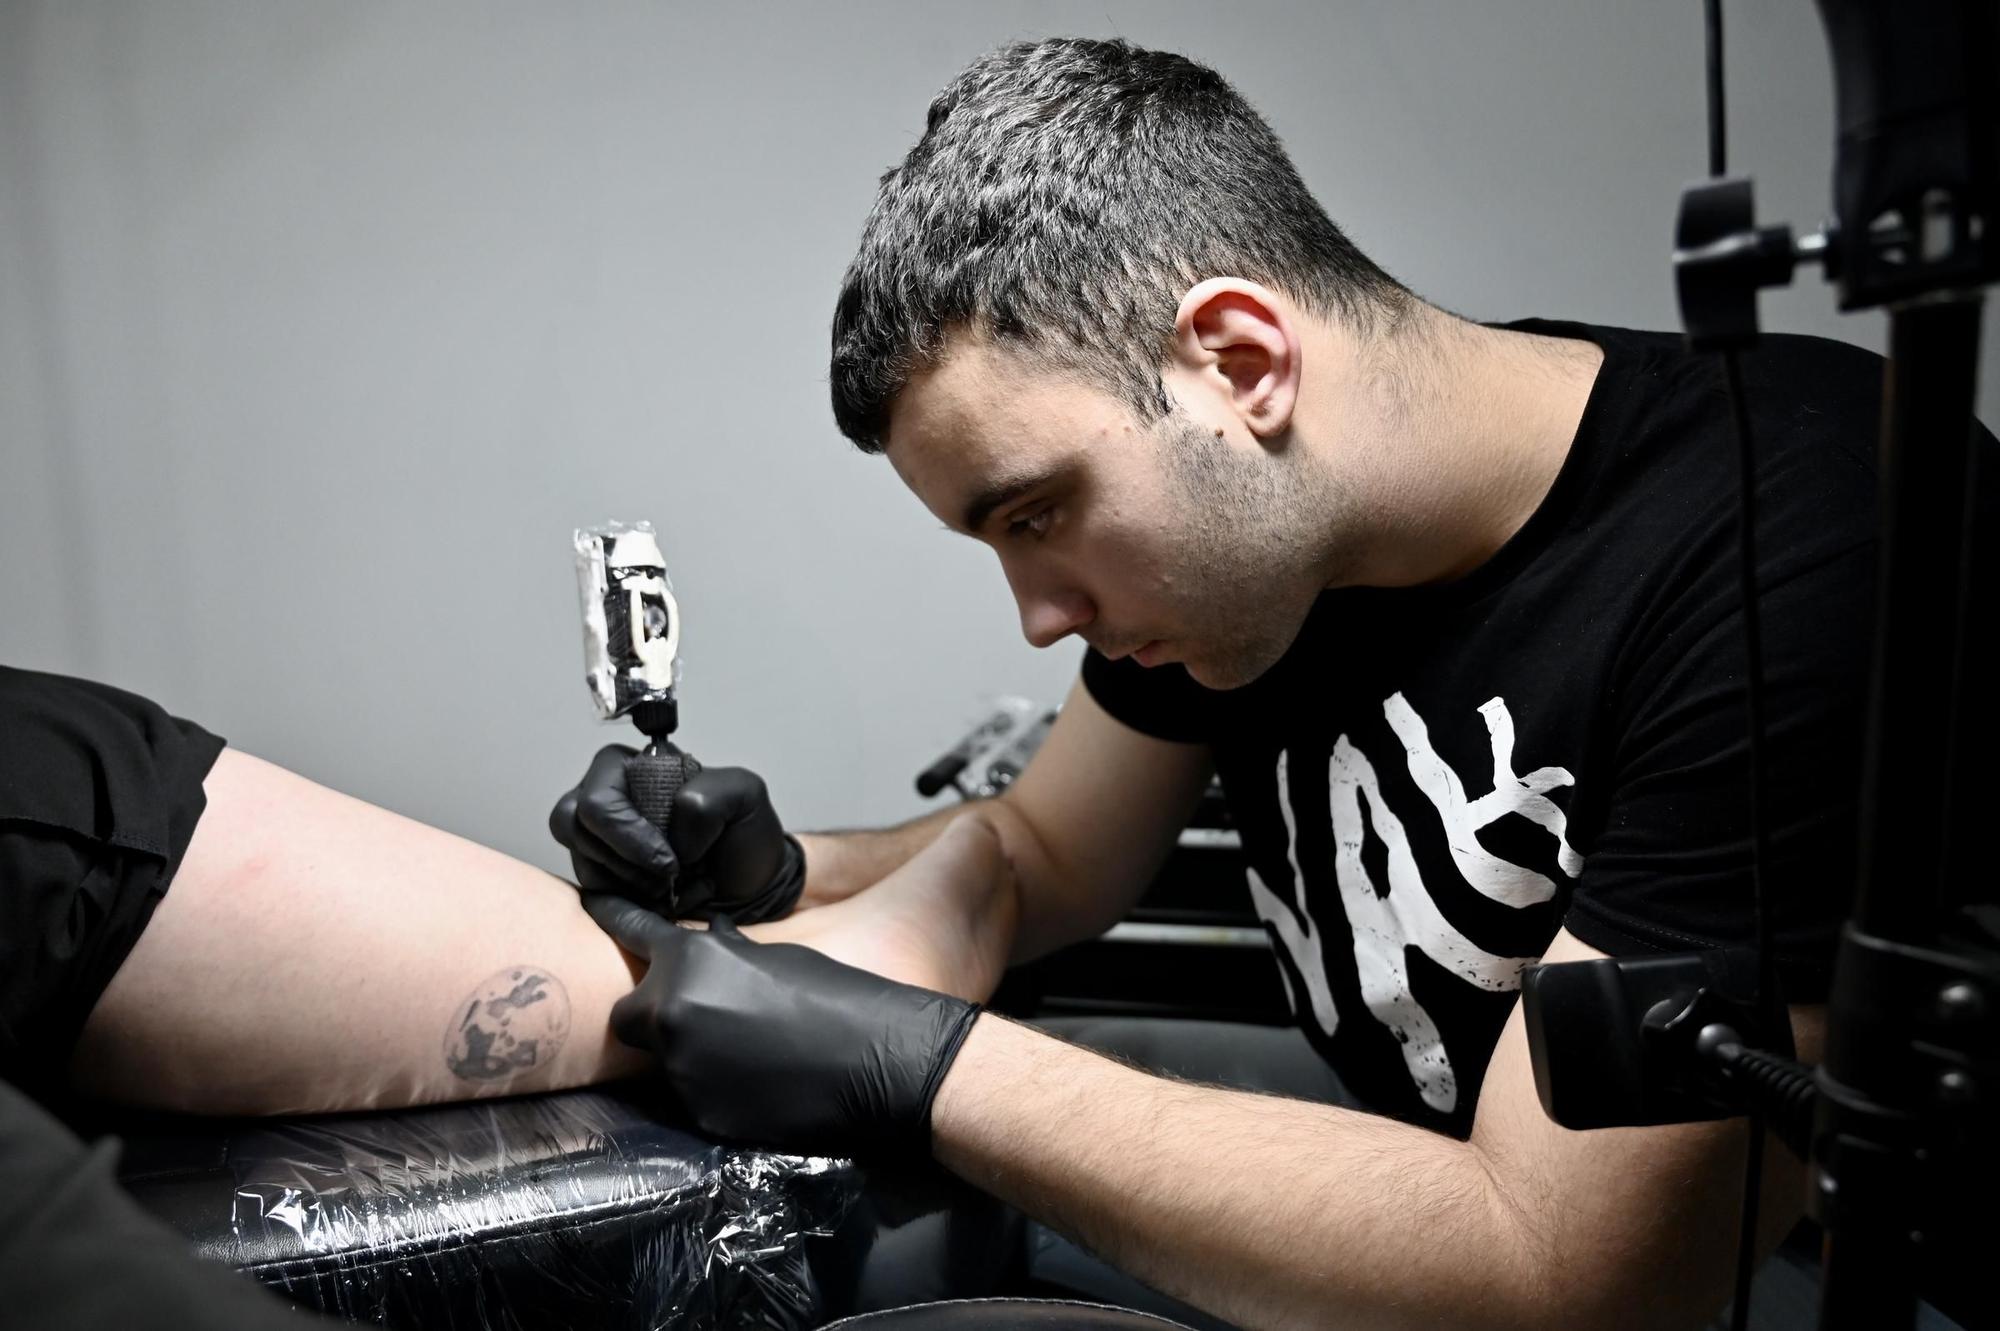 Los tatuajes, un negocio puntero en la ciudad